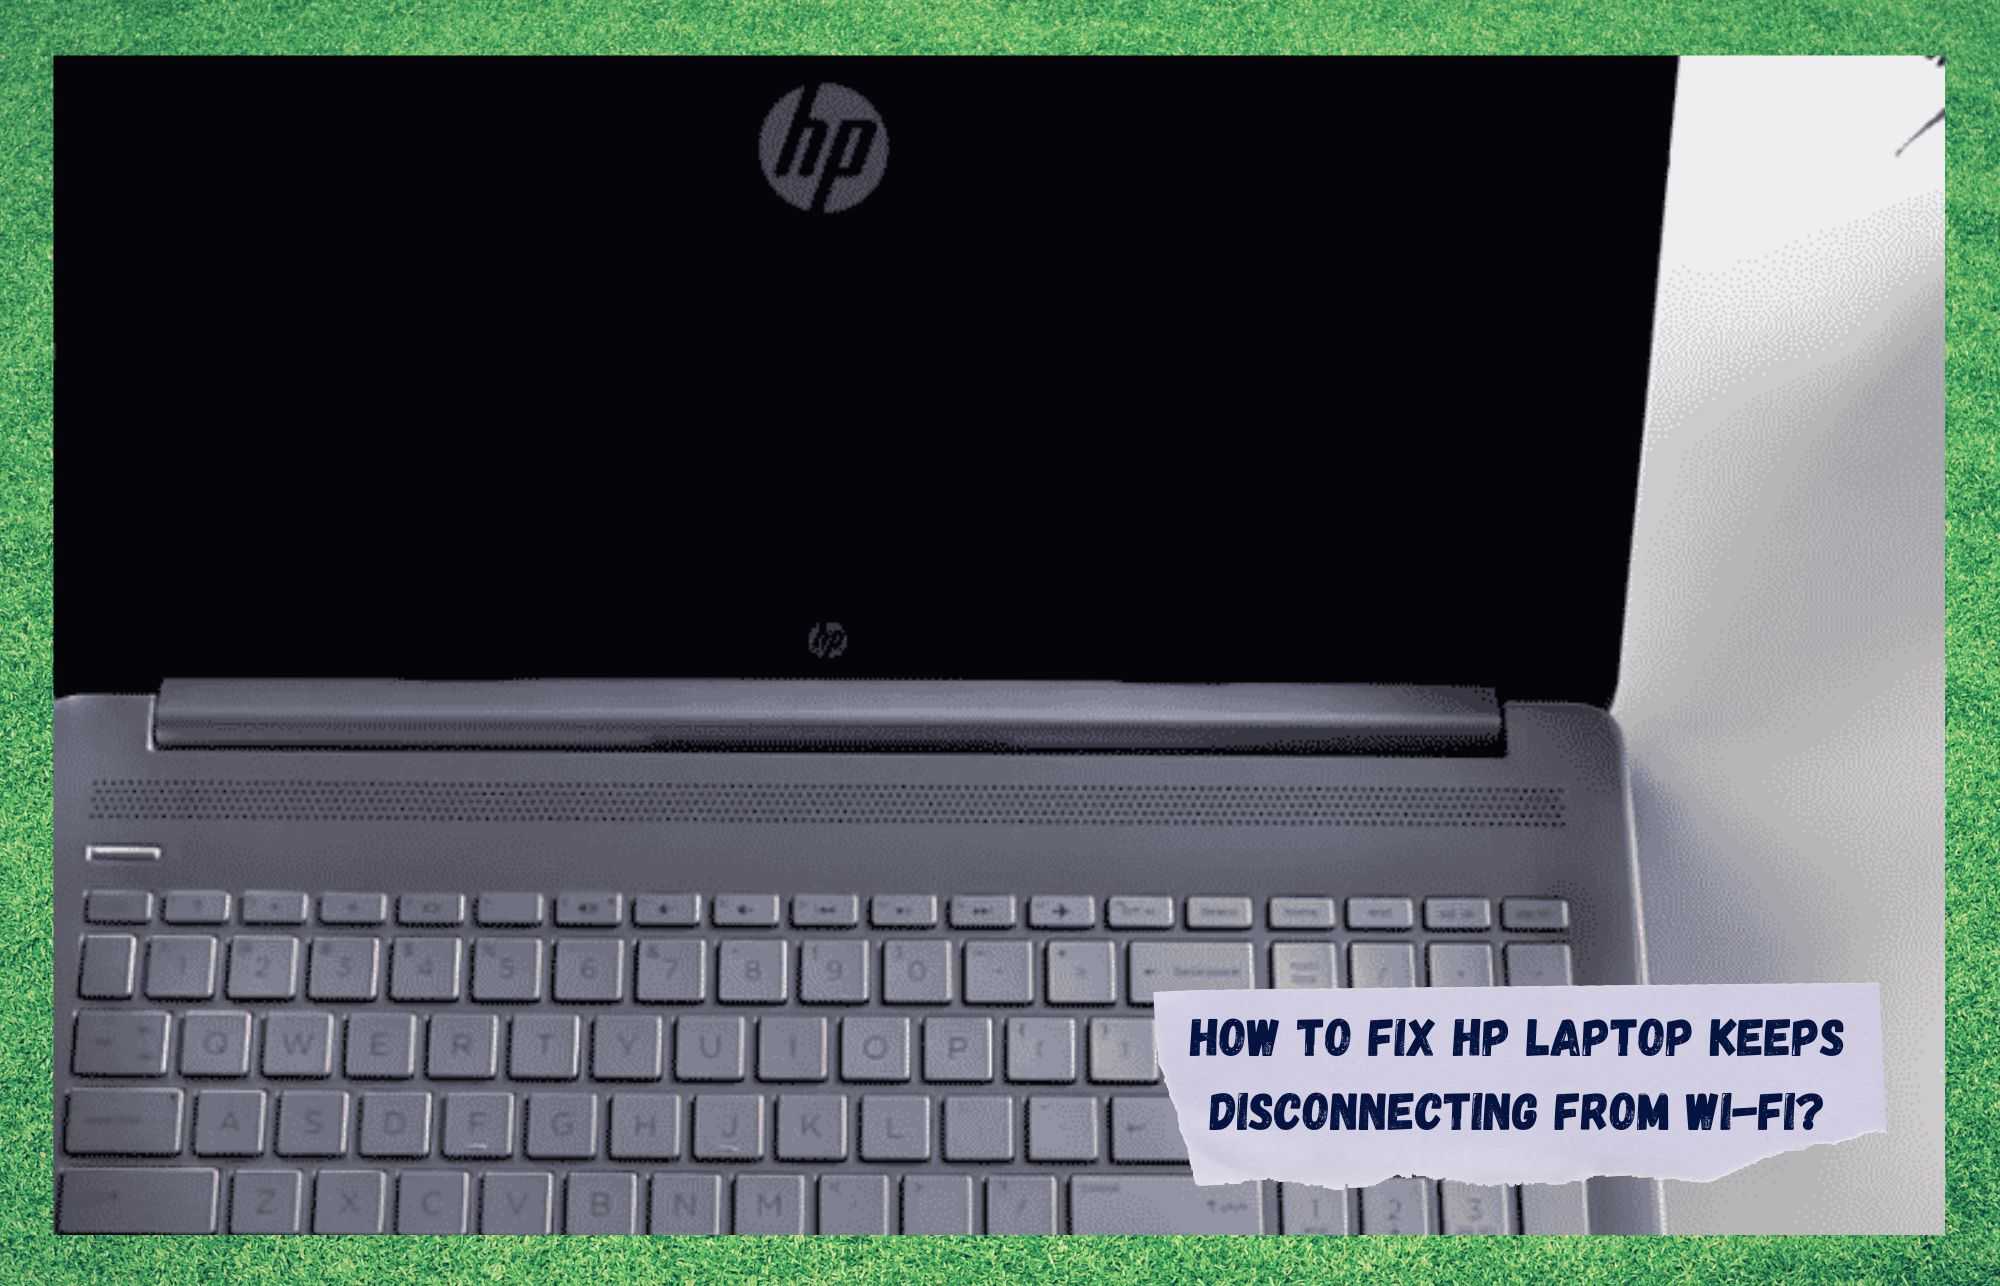 एचपी लैपटॉप को ठीक करने के 6 तरीके वाई-फाई से डिस्कनेक्ट होते रहते हैं